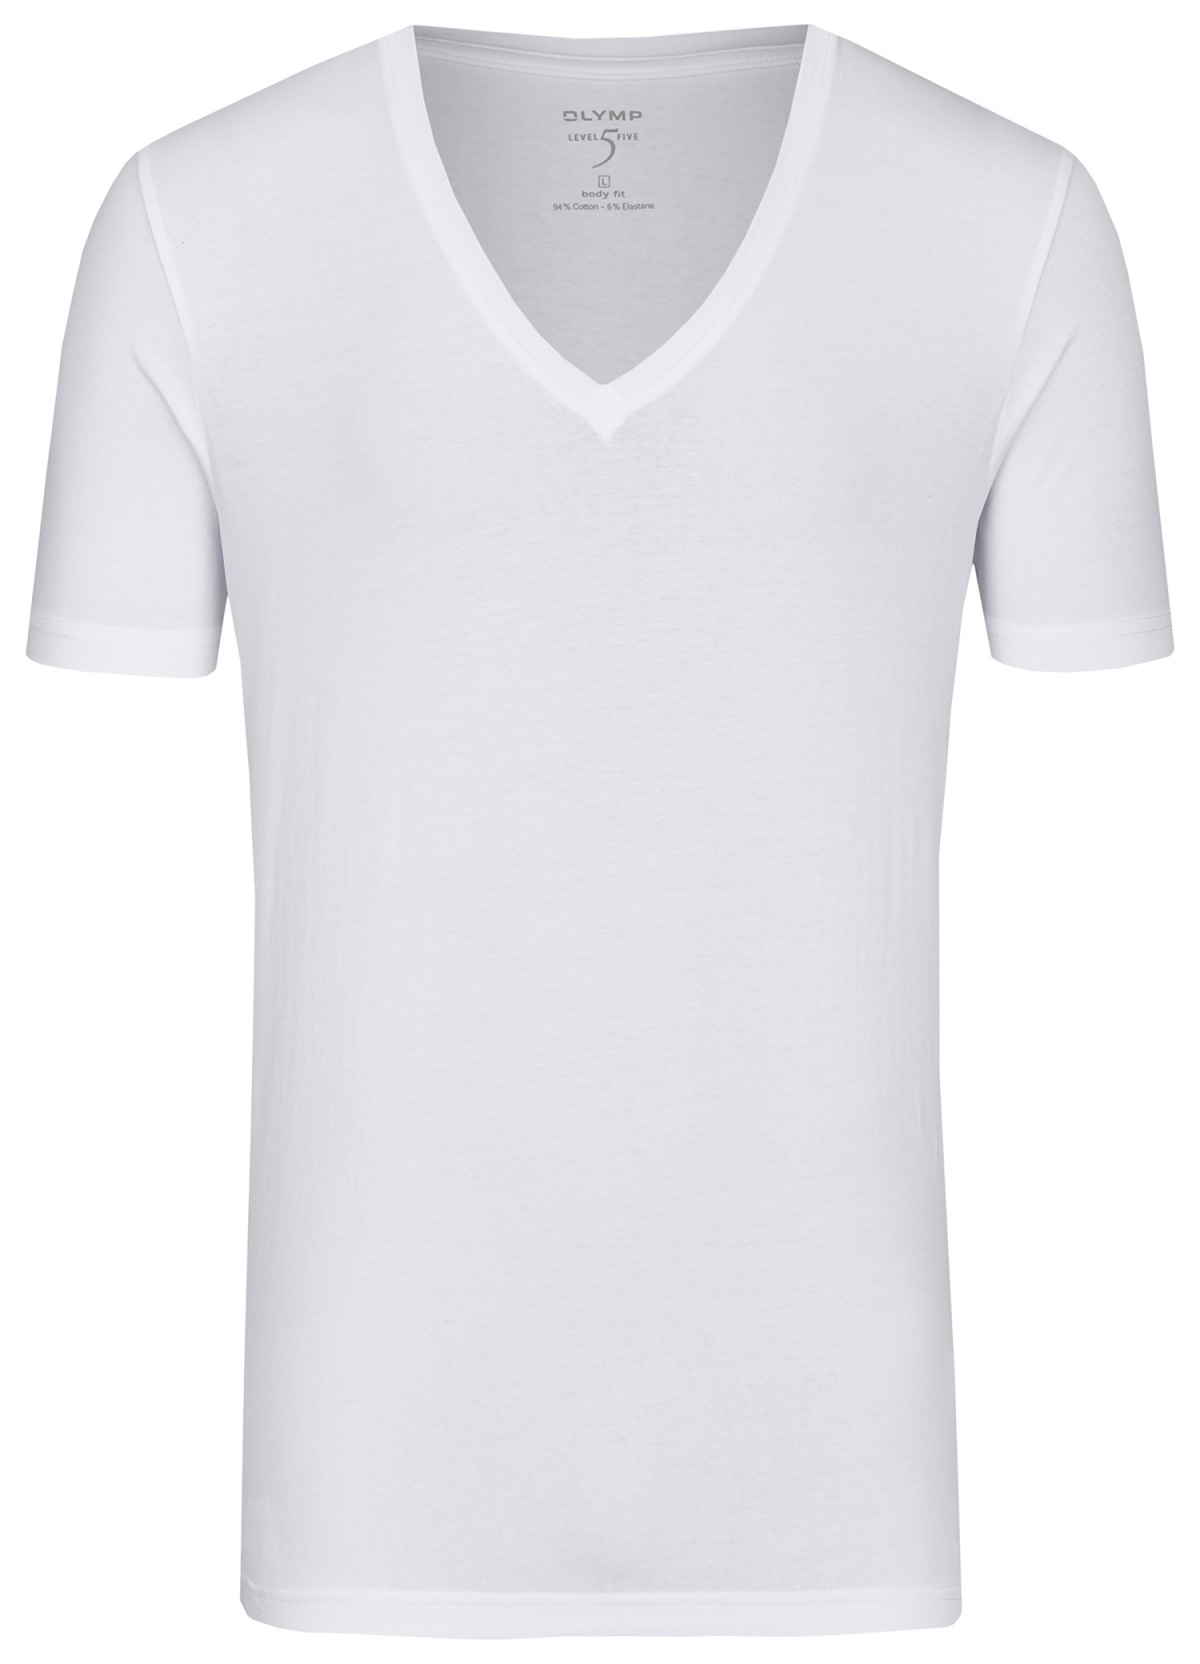 OLYMP Level Five Body Fit tiefer - V-Ausschnitt - weiß - T-Shirt